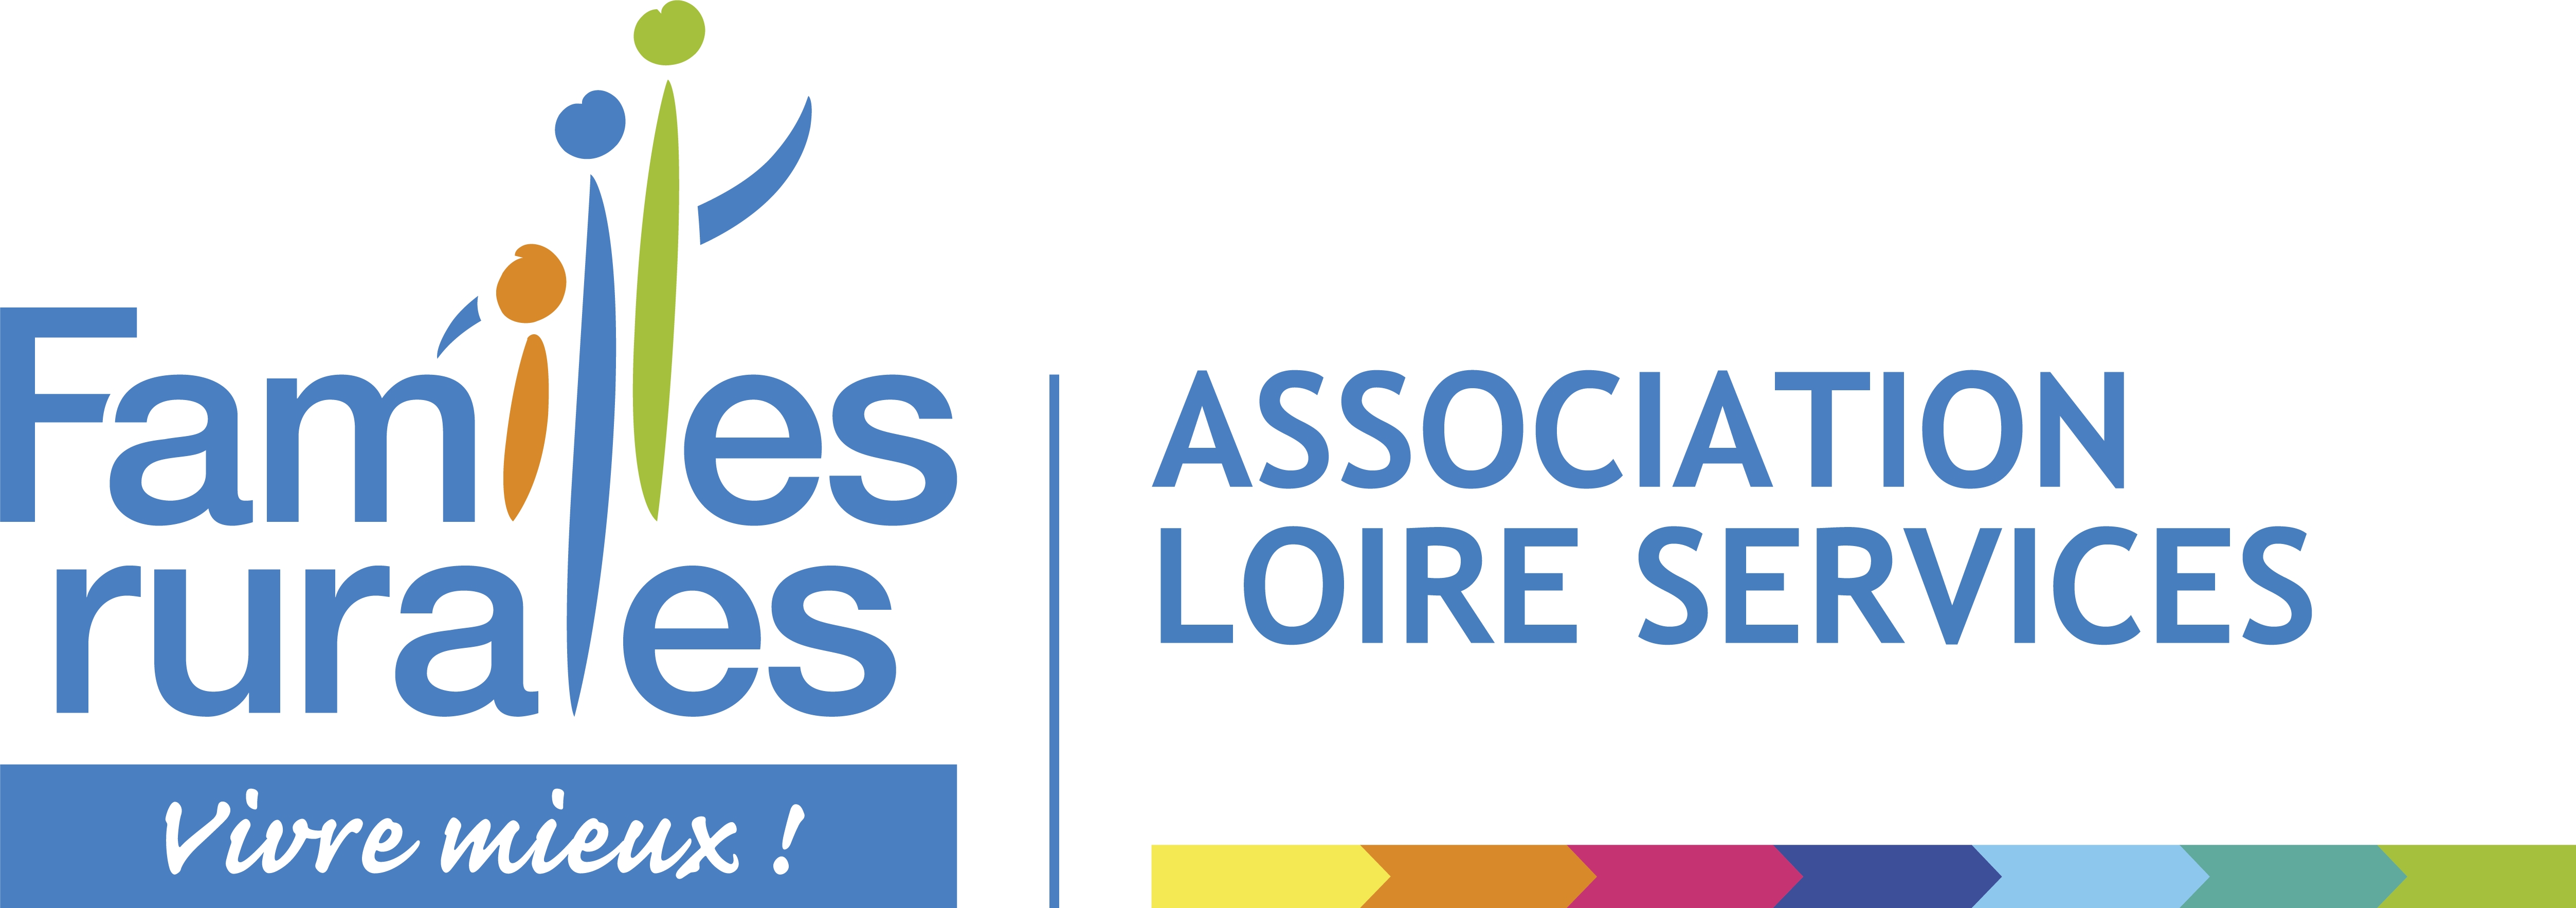 logo_LOIRE_SERVICES.png